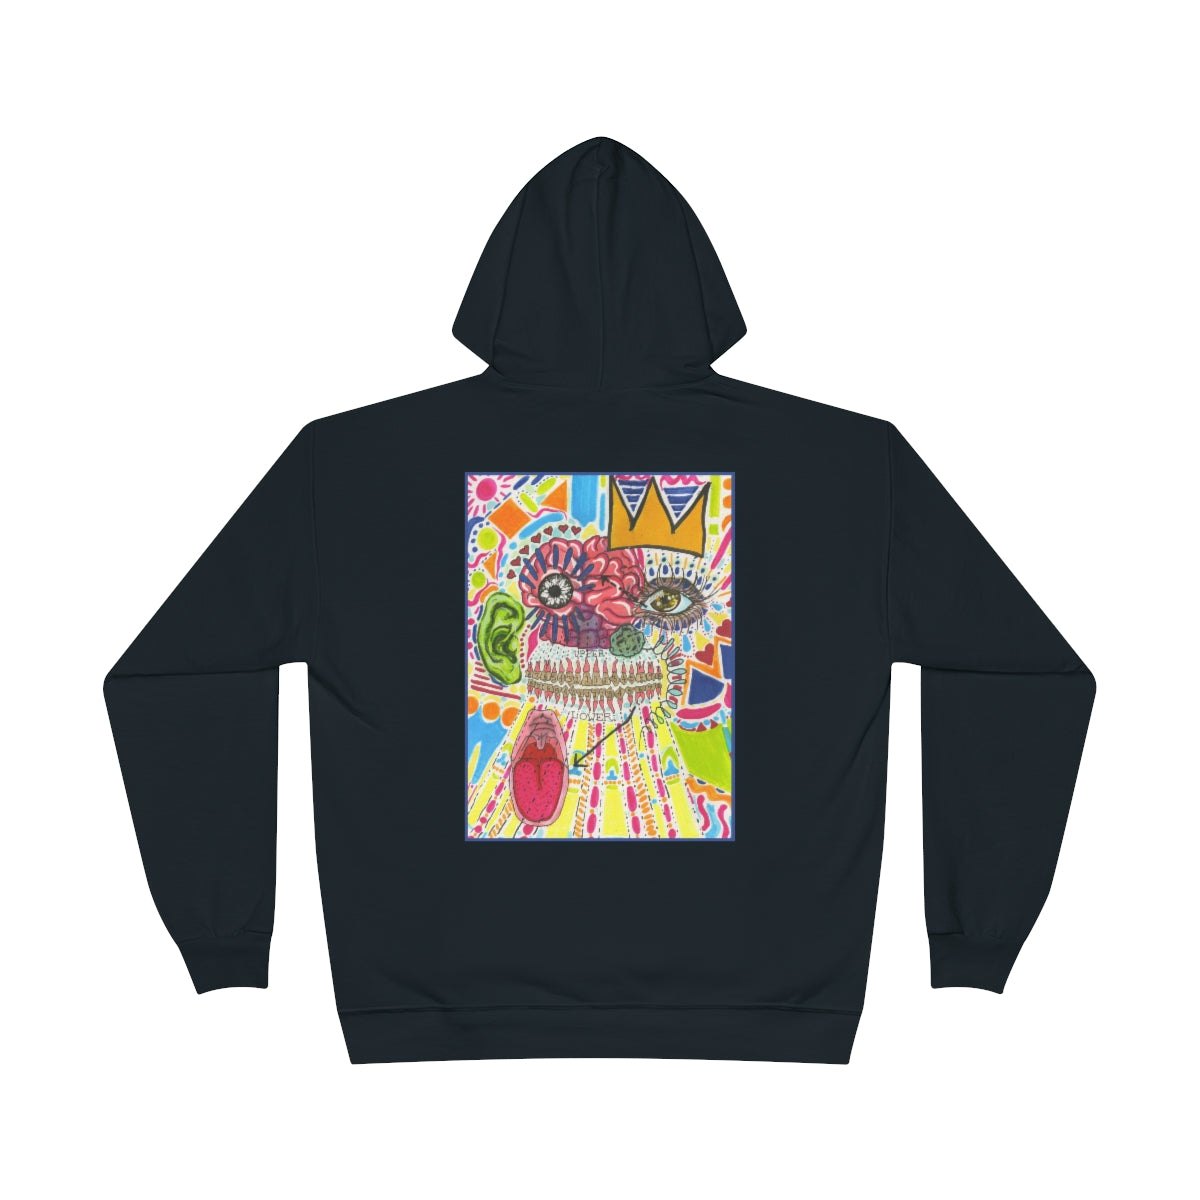 art is subjective hoodie